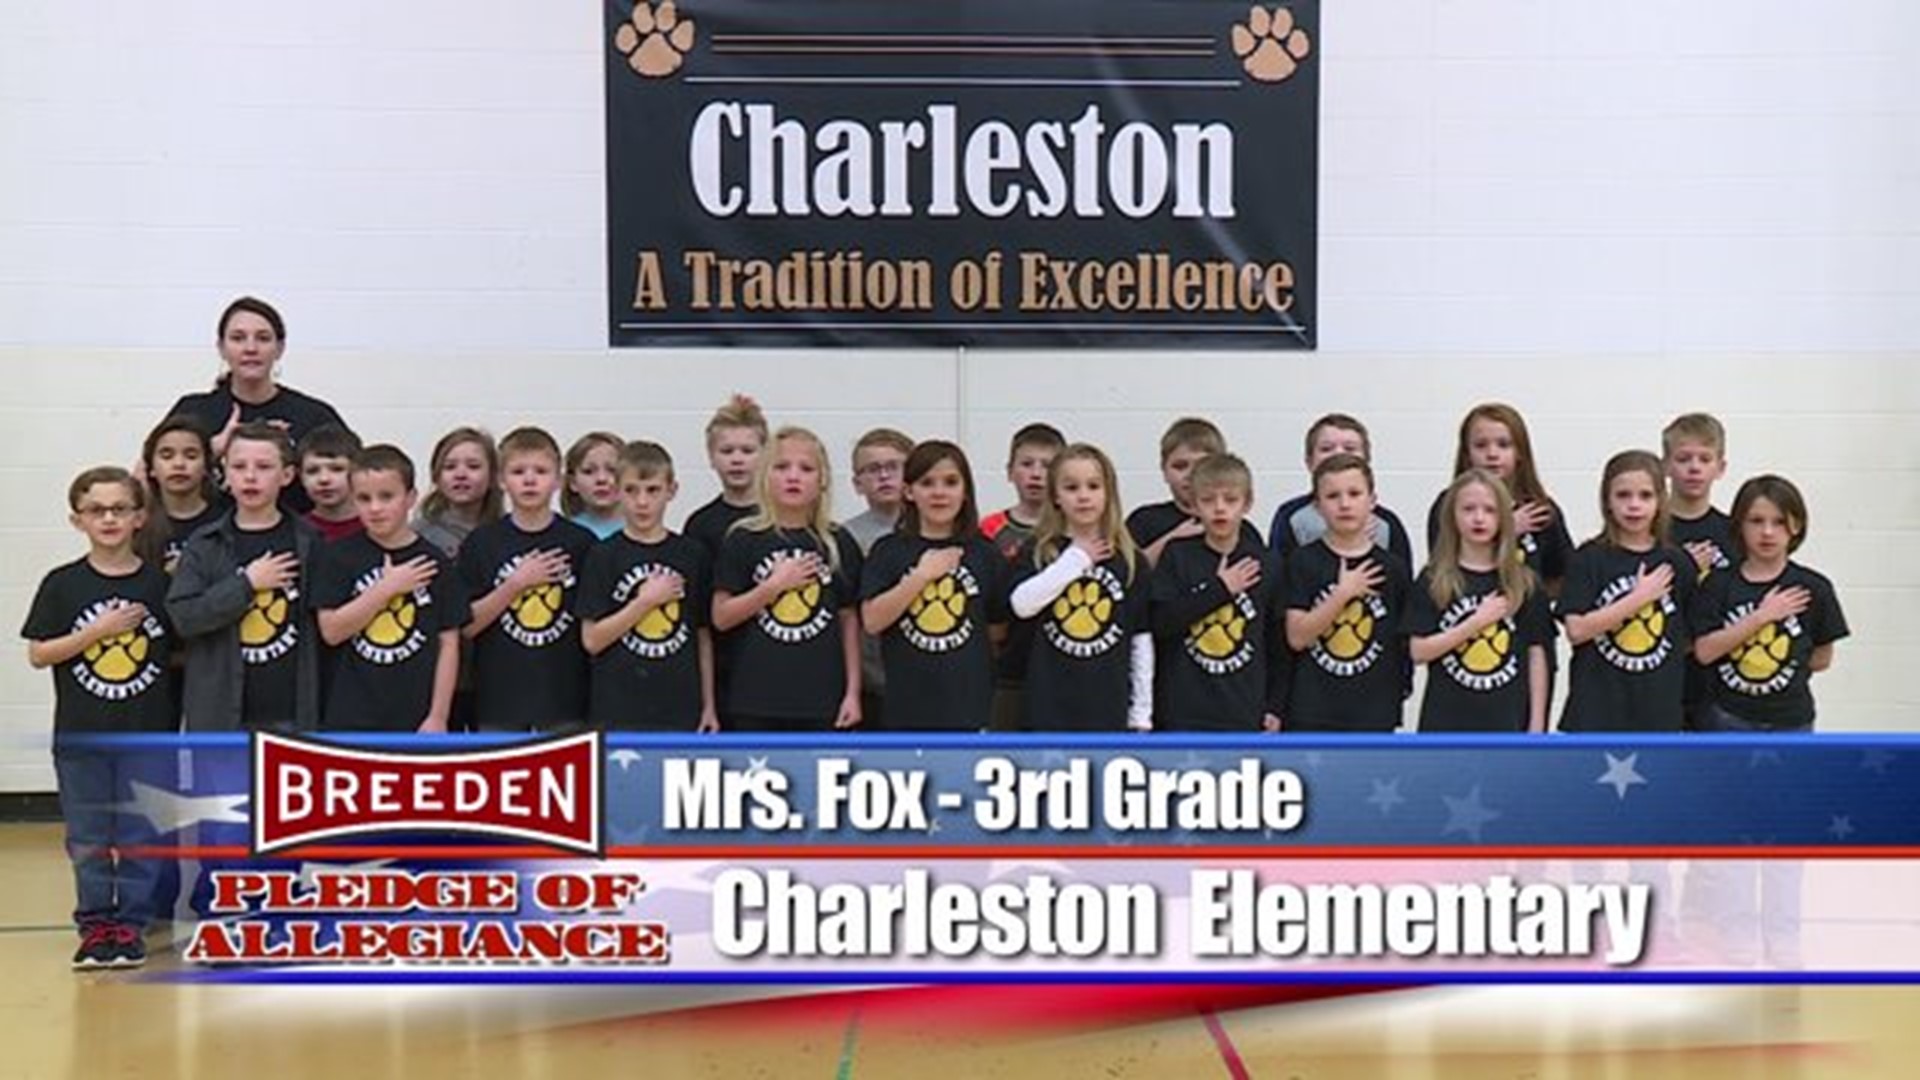 Charleston Elementary, Mrs. Fox - Third Grade